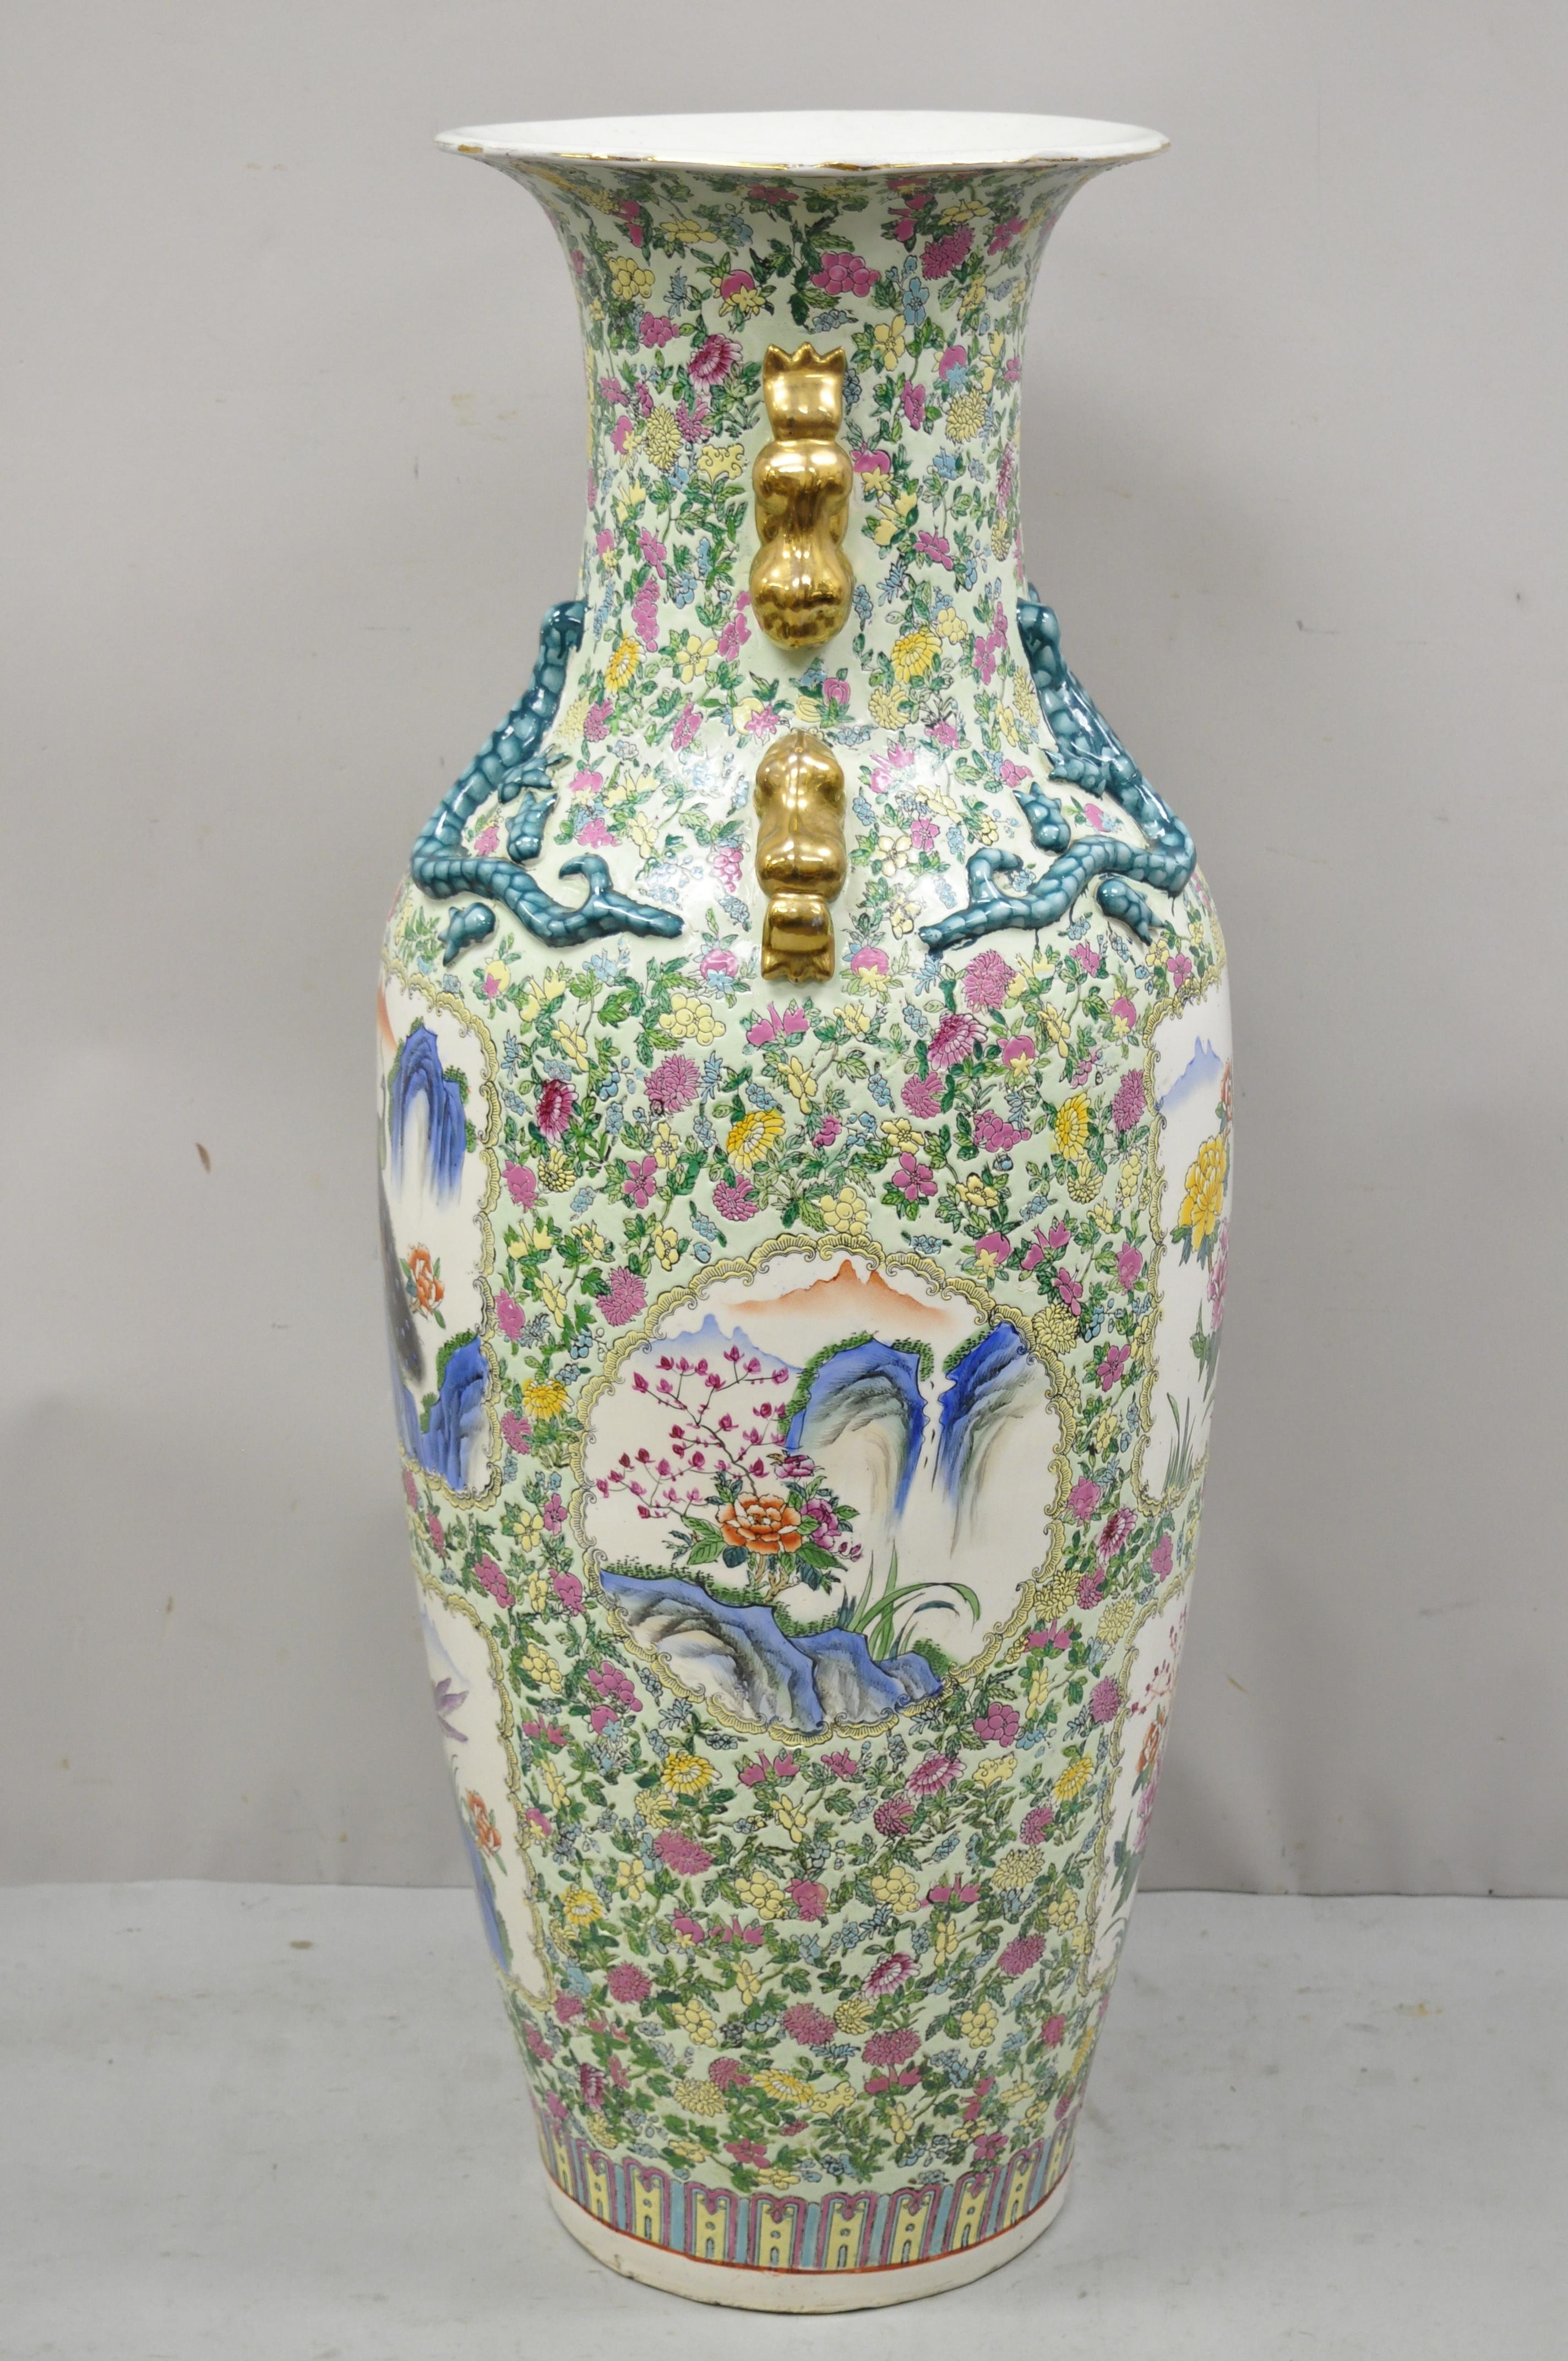 Vintage Chinese Export Large Peacock Rose Medallion Porcelain Palace Urn Vase For Sale 1